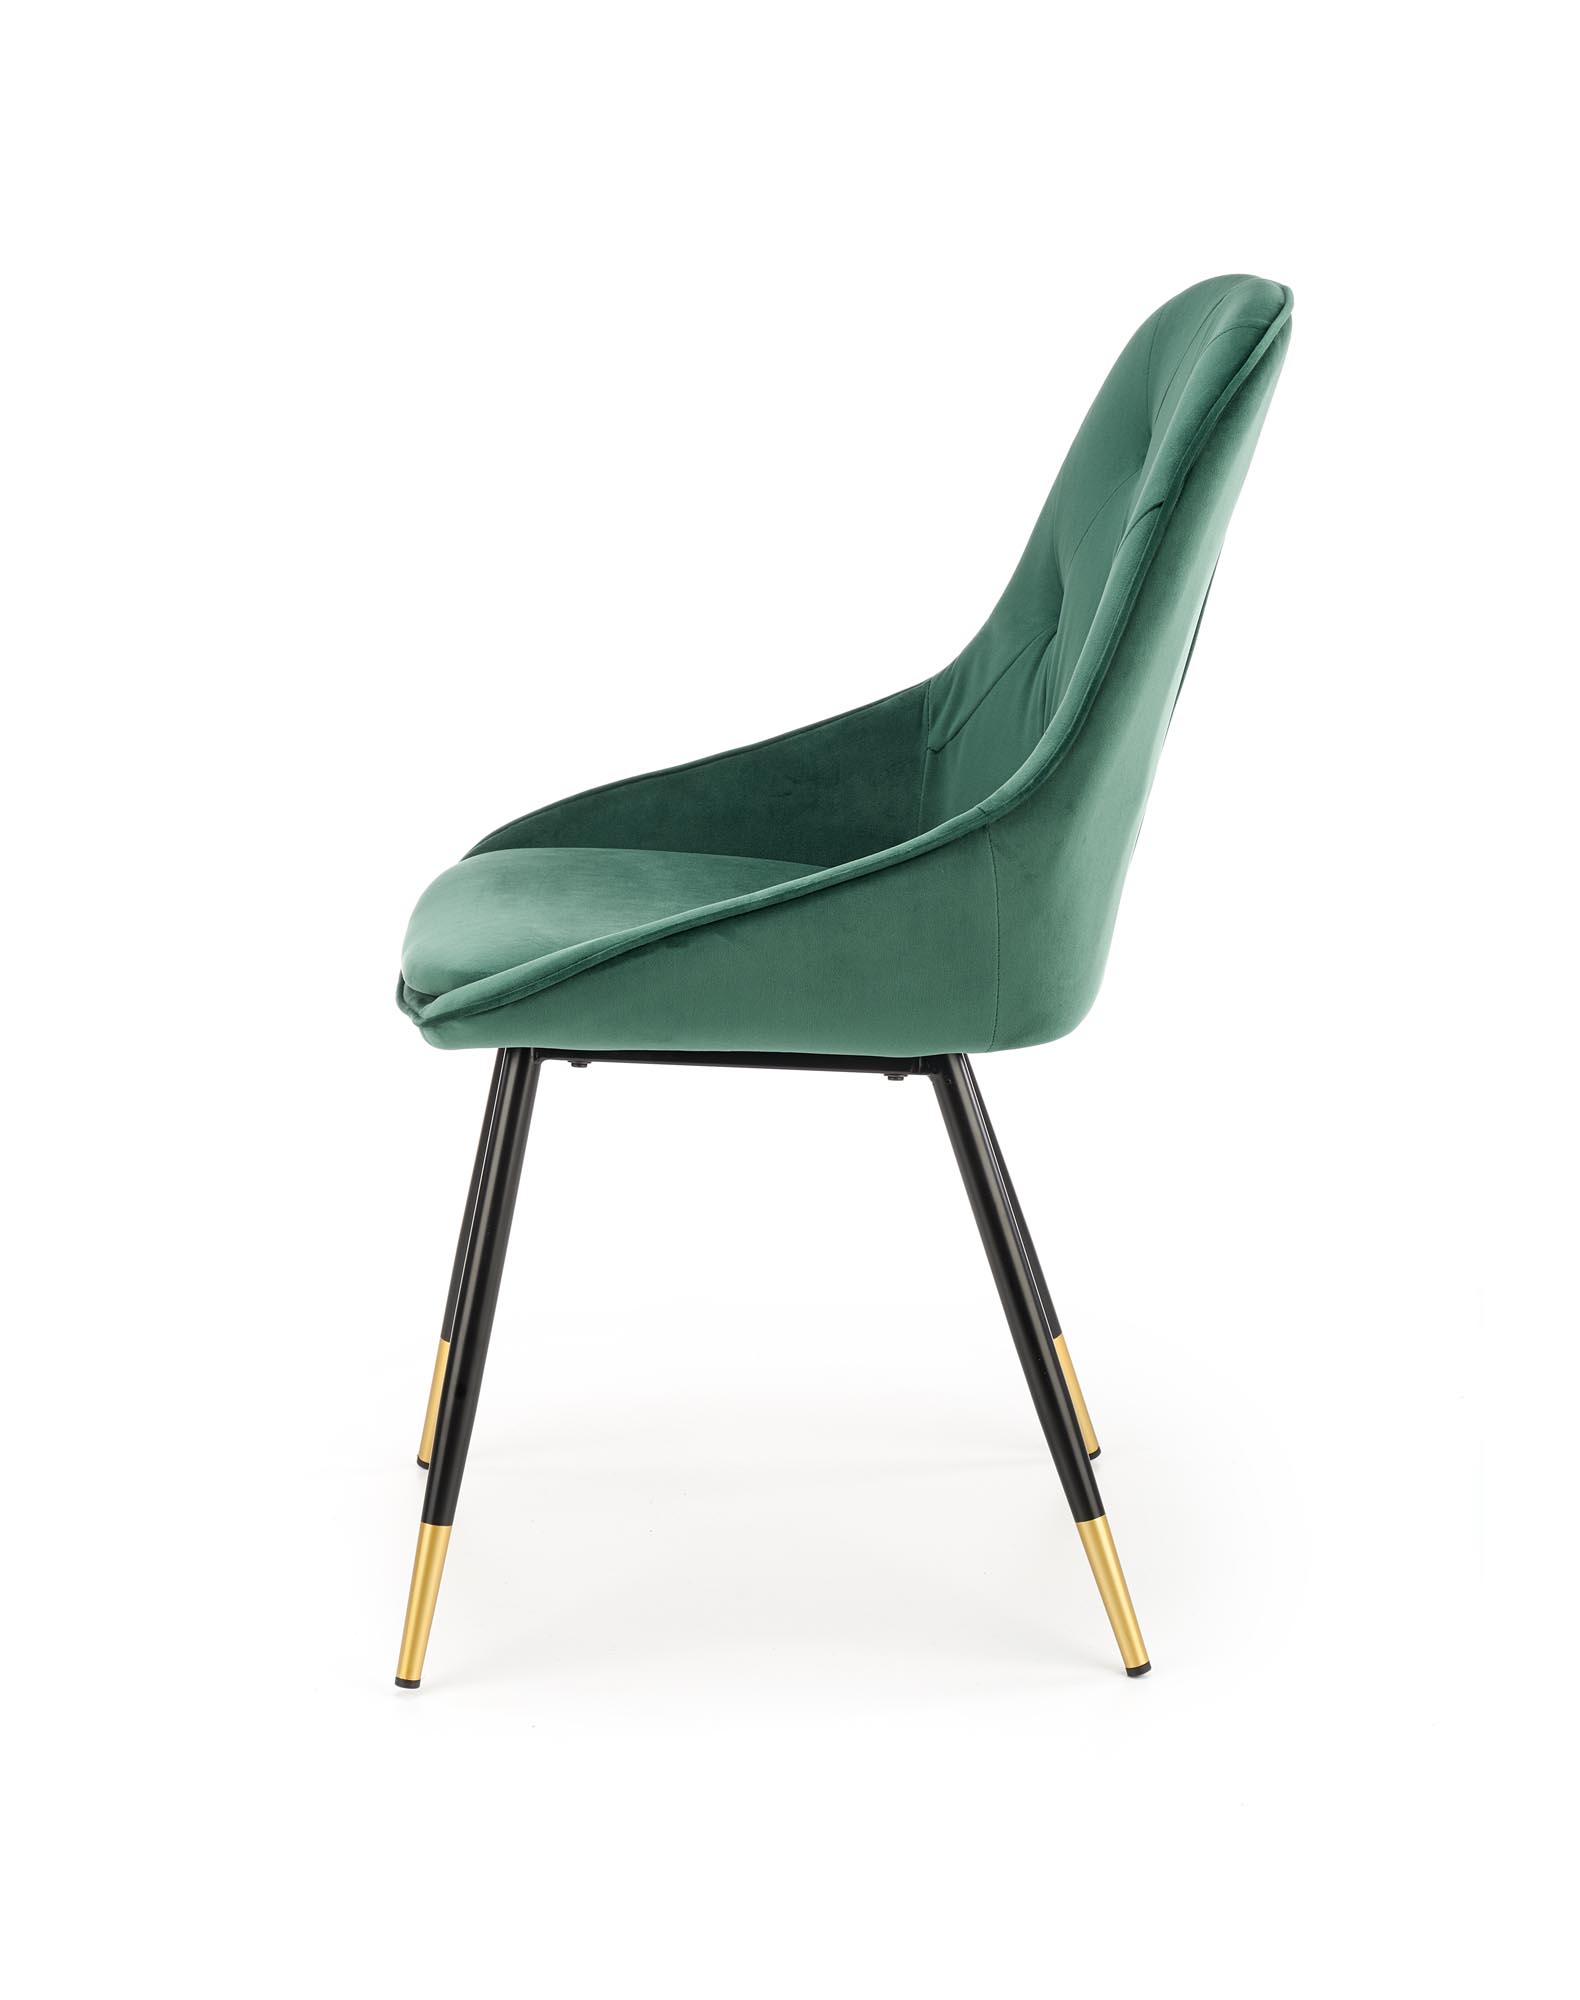 K437 stolica, boja: tamno zelena